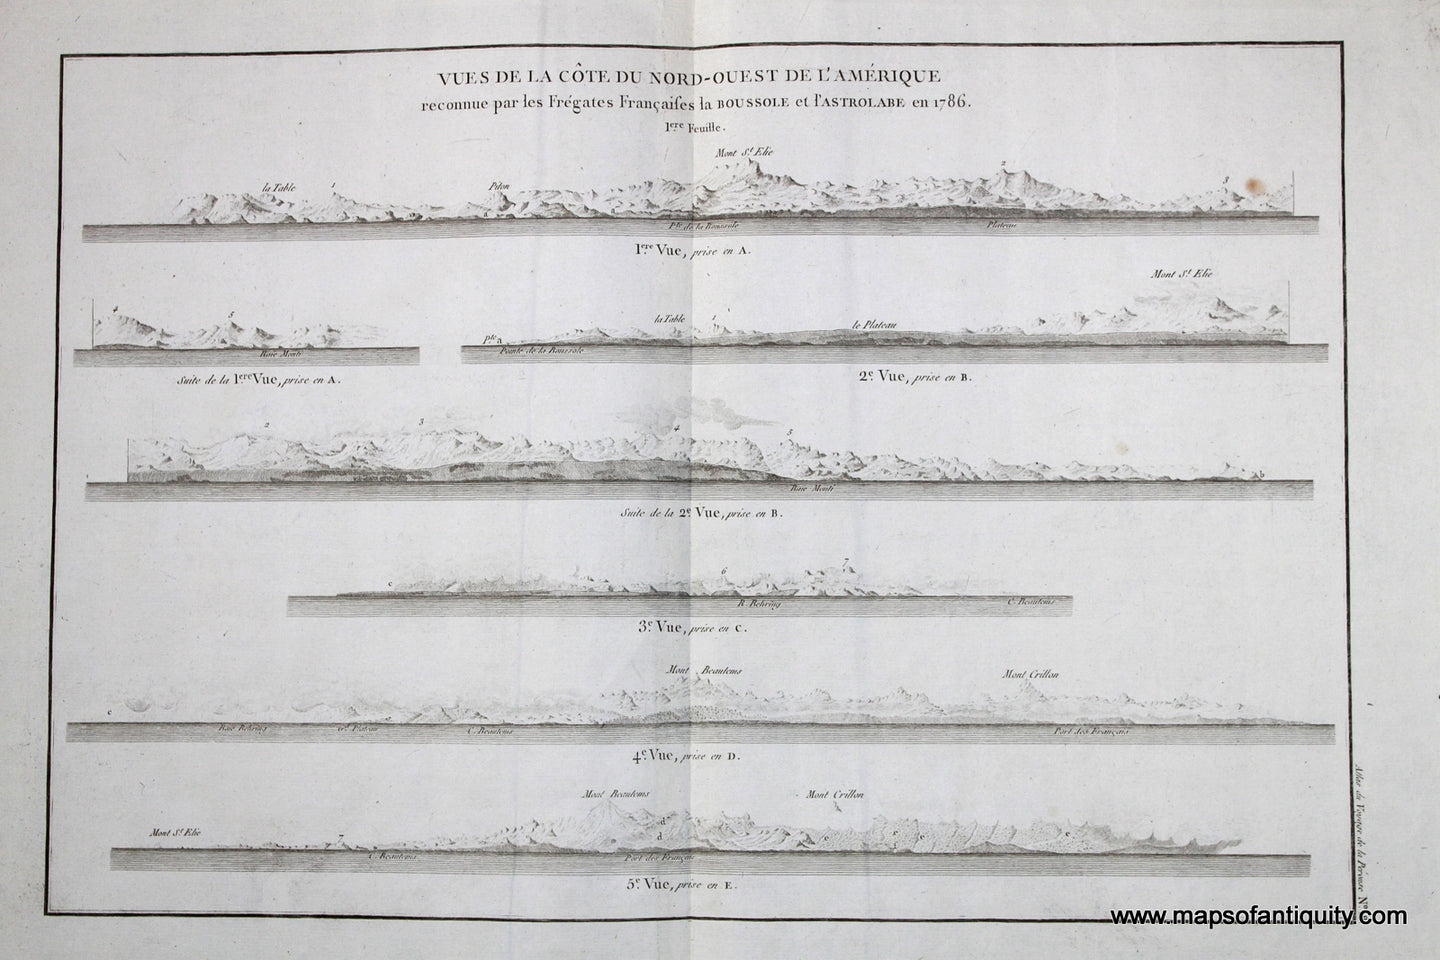 Antique-Black-and-White-Engraved-Recognition-Profiles-Vue-de-la-Cote-du-Nord-Ouest-de-L'Amerique-No.-18-West-General-Antique-Nautical-Charts-1798-Atlas-du-Voyage-de-la-Perouse-Maps-Of-Antiquity